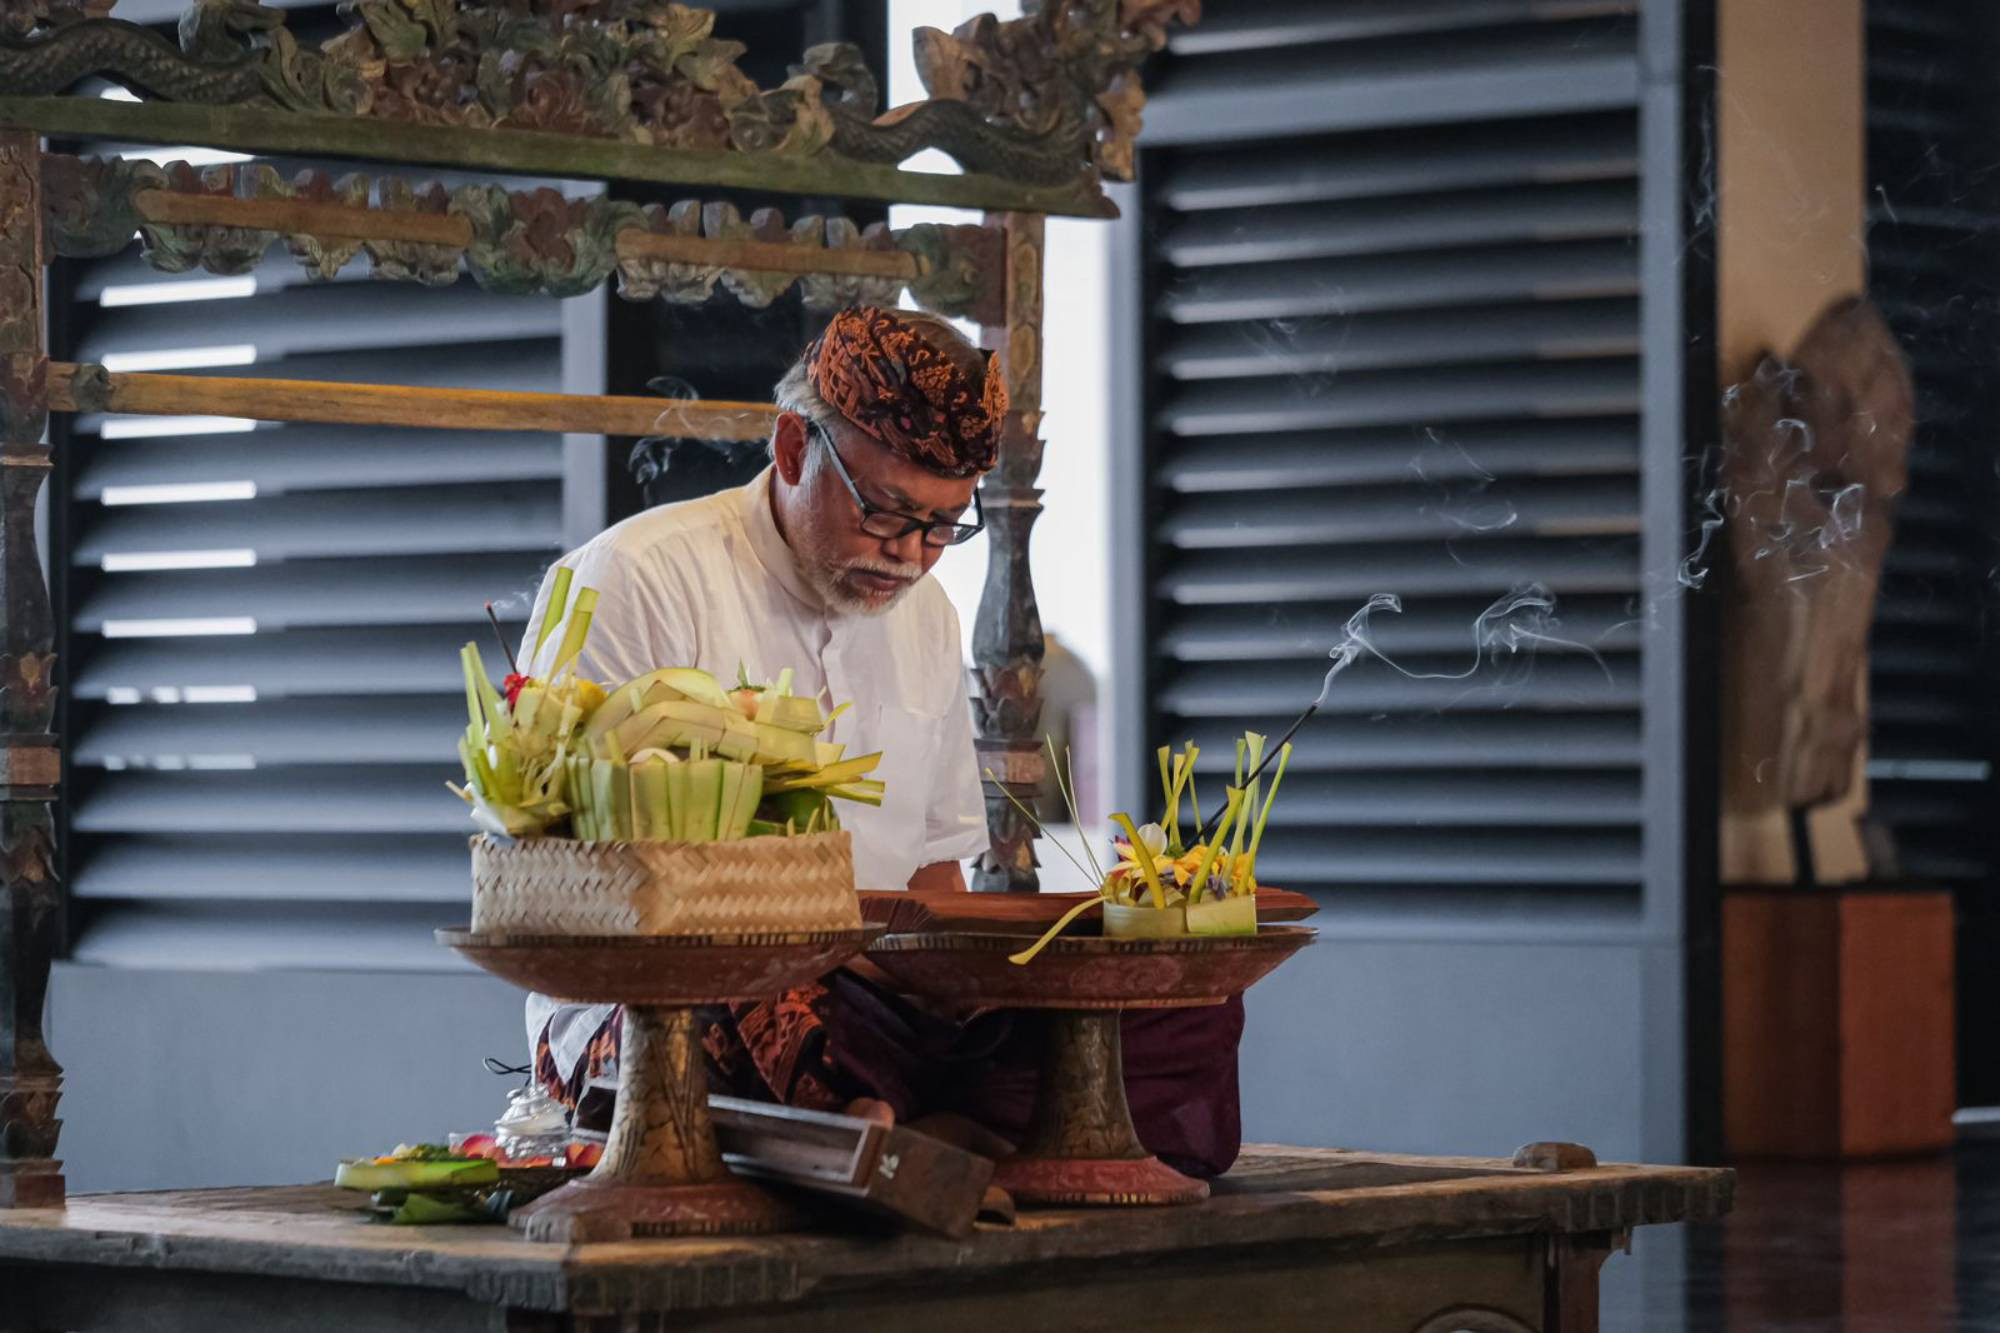 Apurva Kempinski Bali Pamerkan Naskah Berusia Berabad-abad Zaman Majapahit - JPNN.com